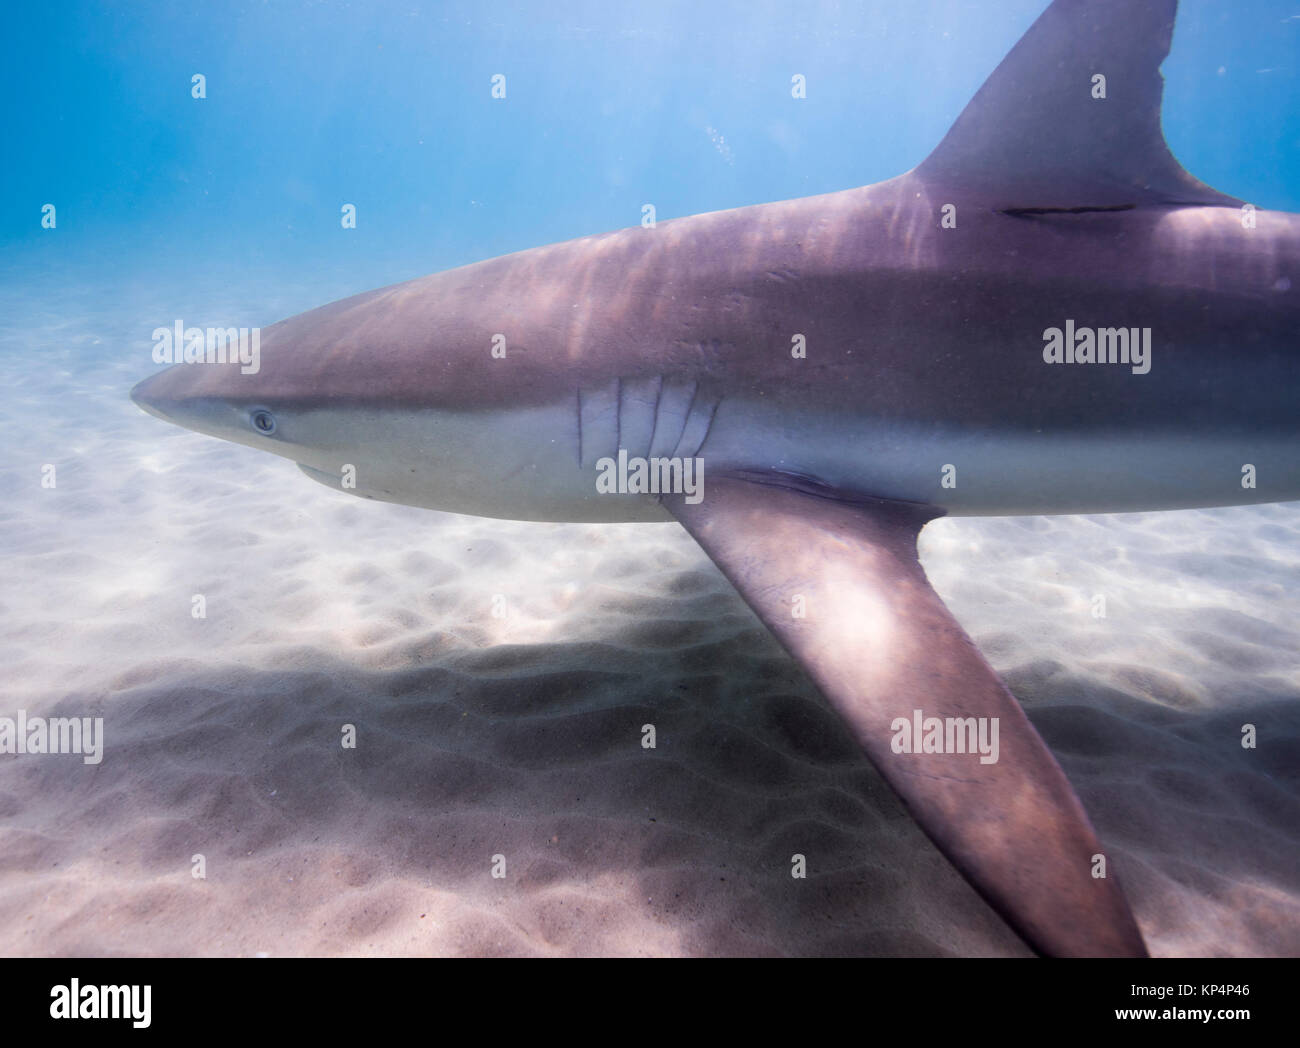 Dusky shark (Carcharhinus obscurus) una specie di requiem shark, nella famiglia Carcharhinidae, che si verificano in tropicale e caldo-temperato marittimo continentale Foto Stock